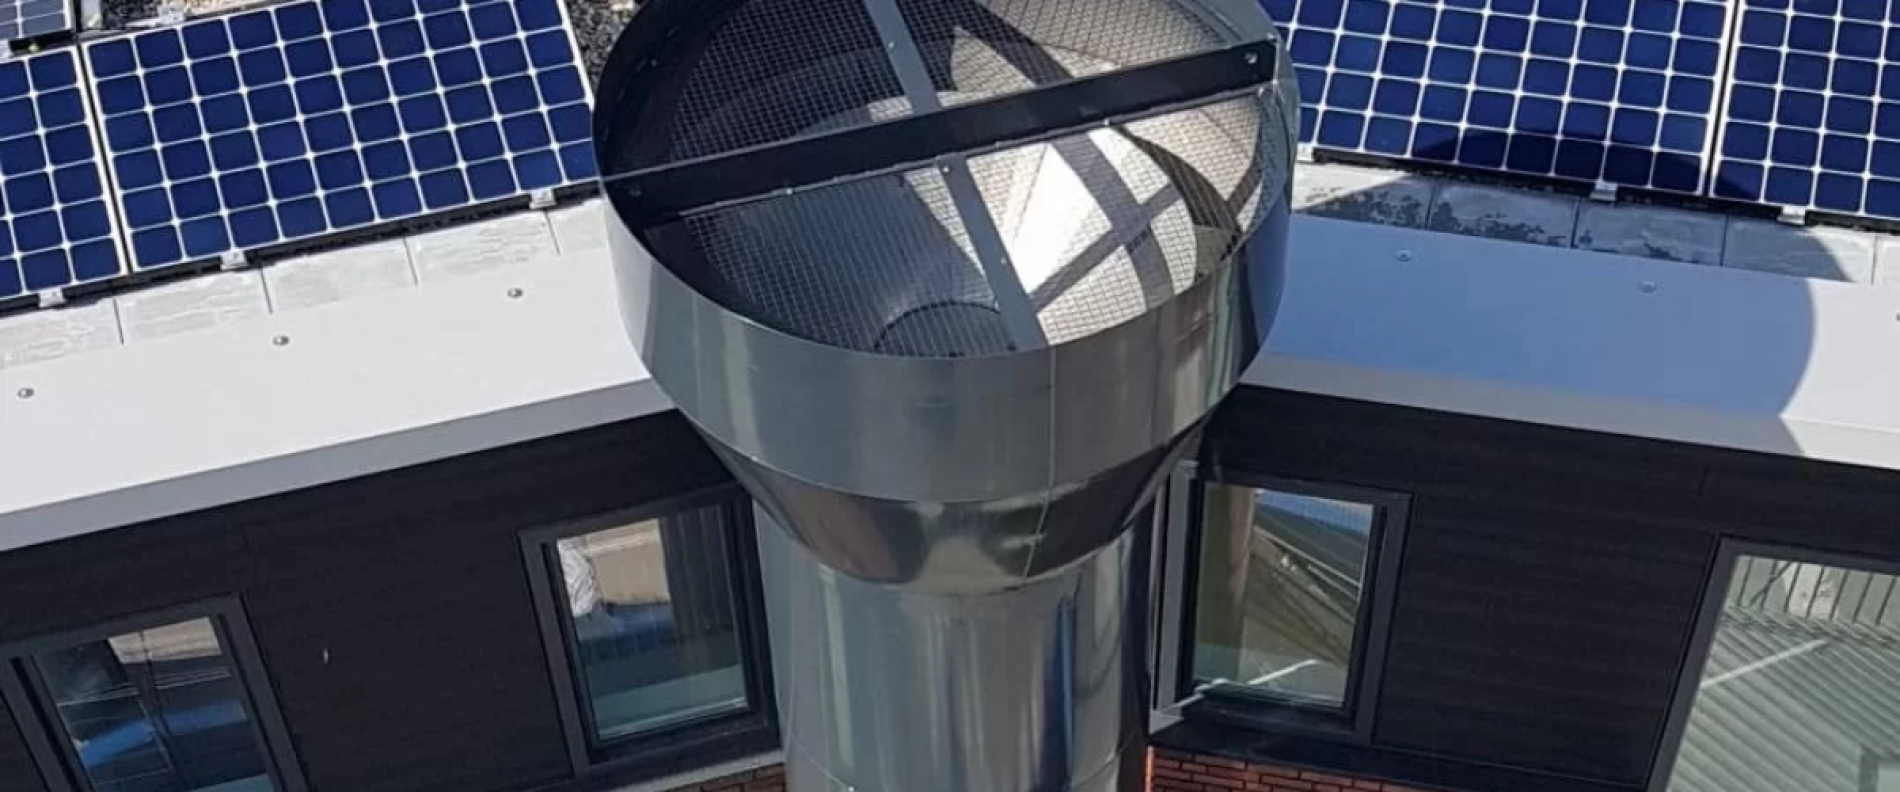 bovenaanzicht van de ventilatieschacht die in verbinding staat met de parkeerplaats in Zwolle